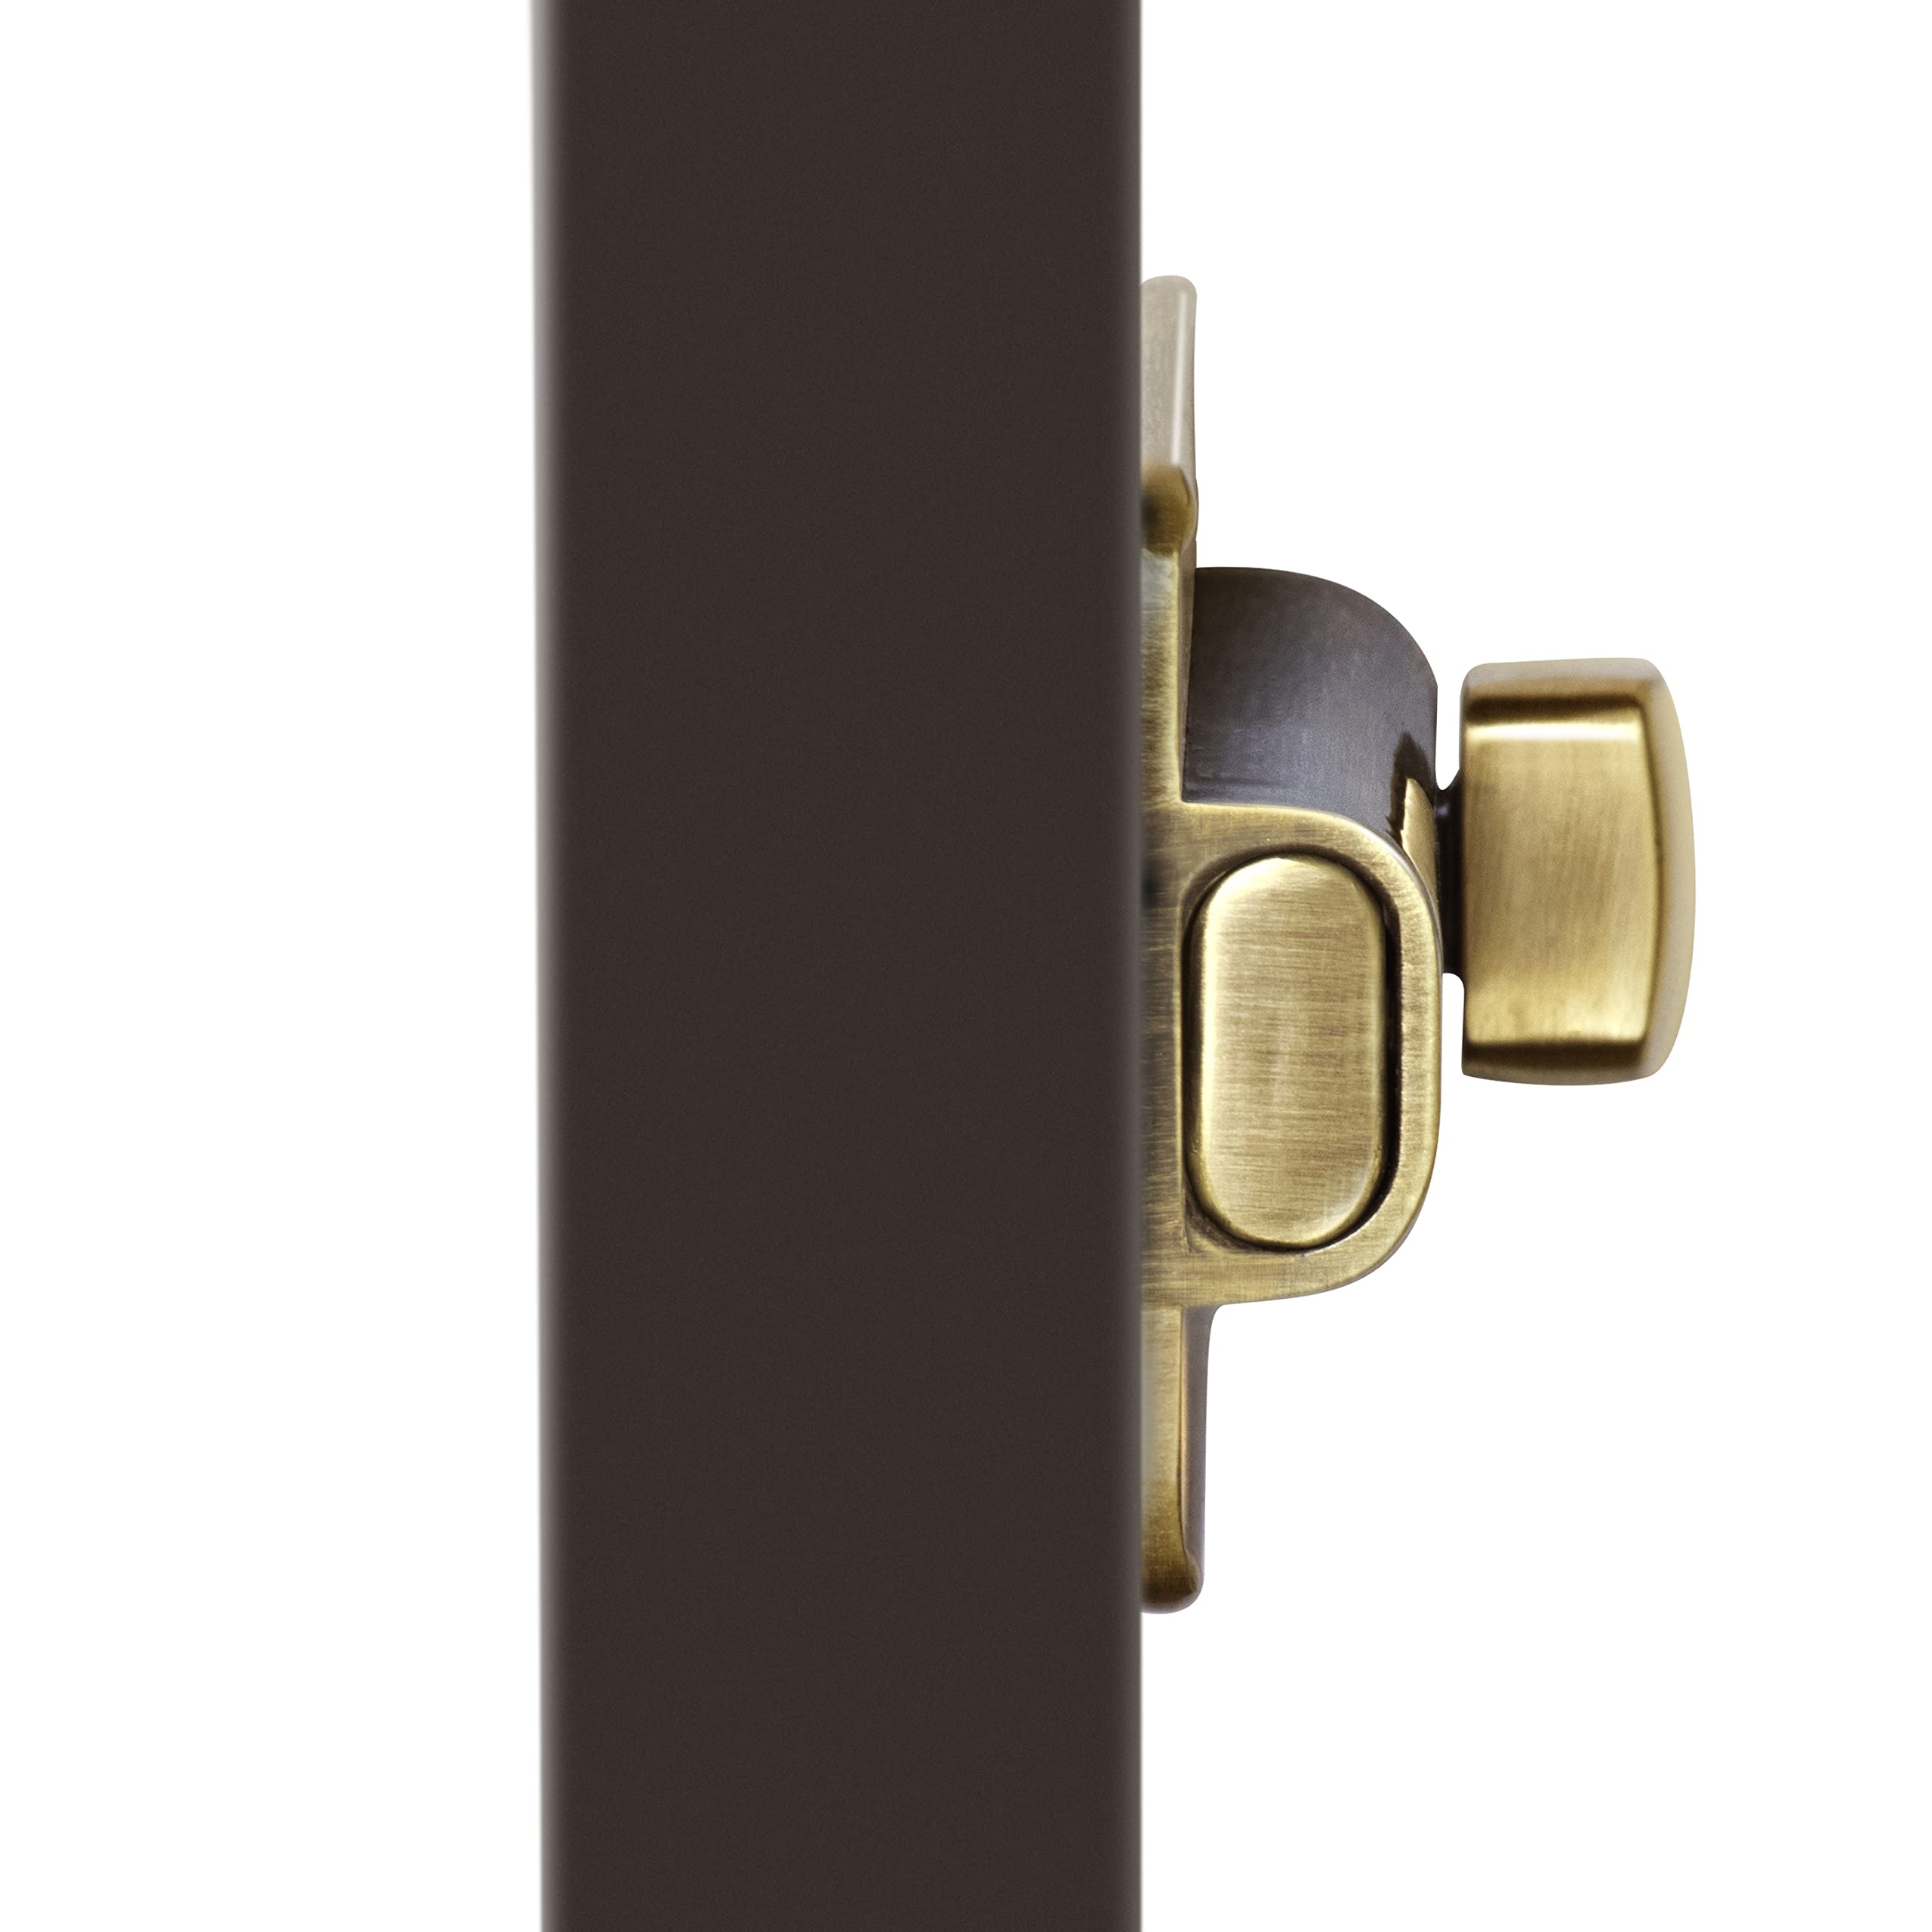 Plantex Premium Heavy Duty Door Stopper/Door Lock Latch for Home and Office Doors - Pack of 3 (Brass Antique)